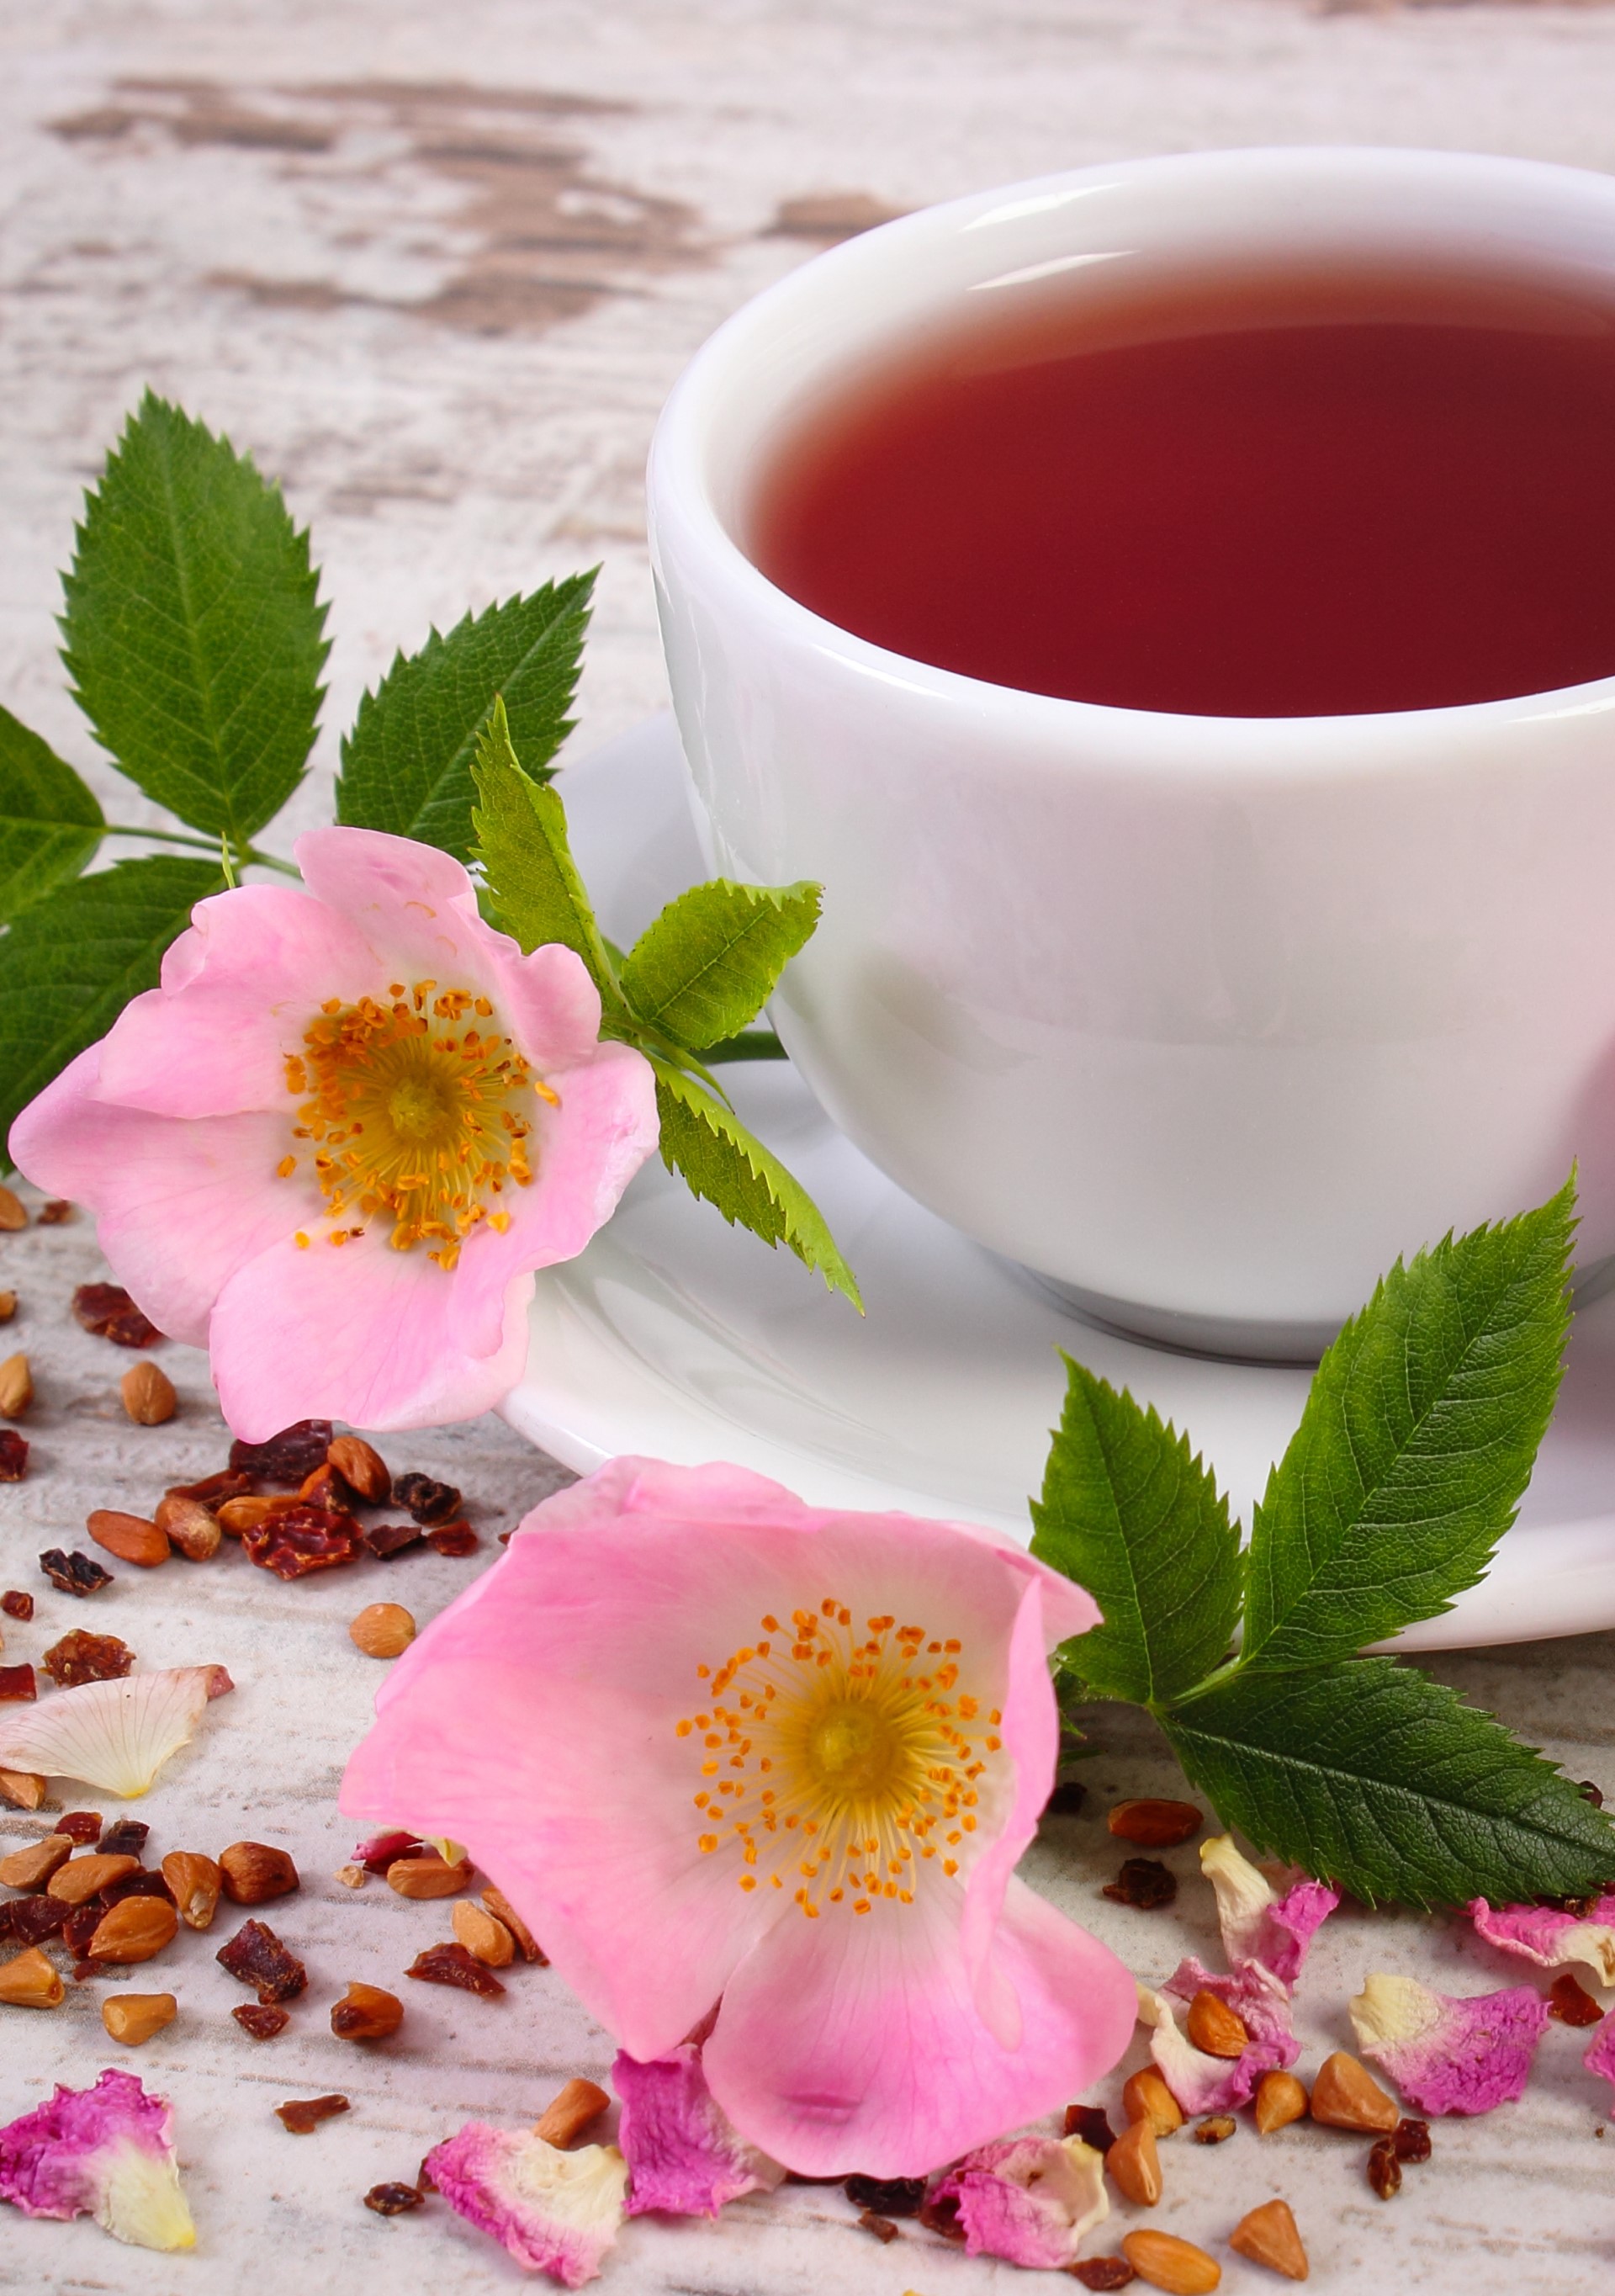 Herbata z dzikiej róży – niedoceniana skarbnica zdrowia